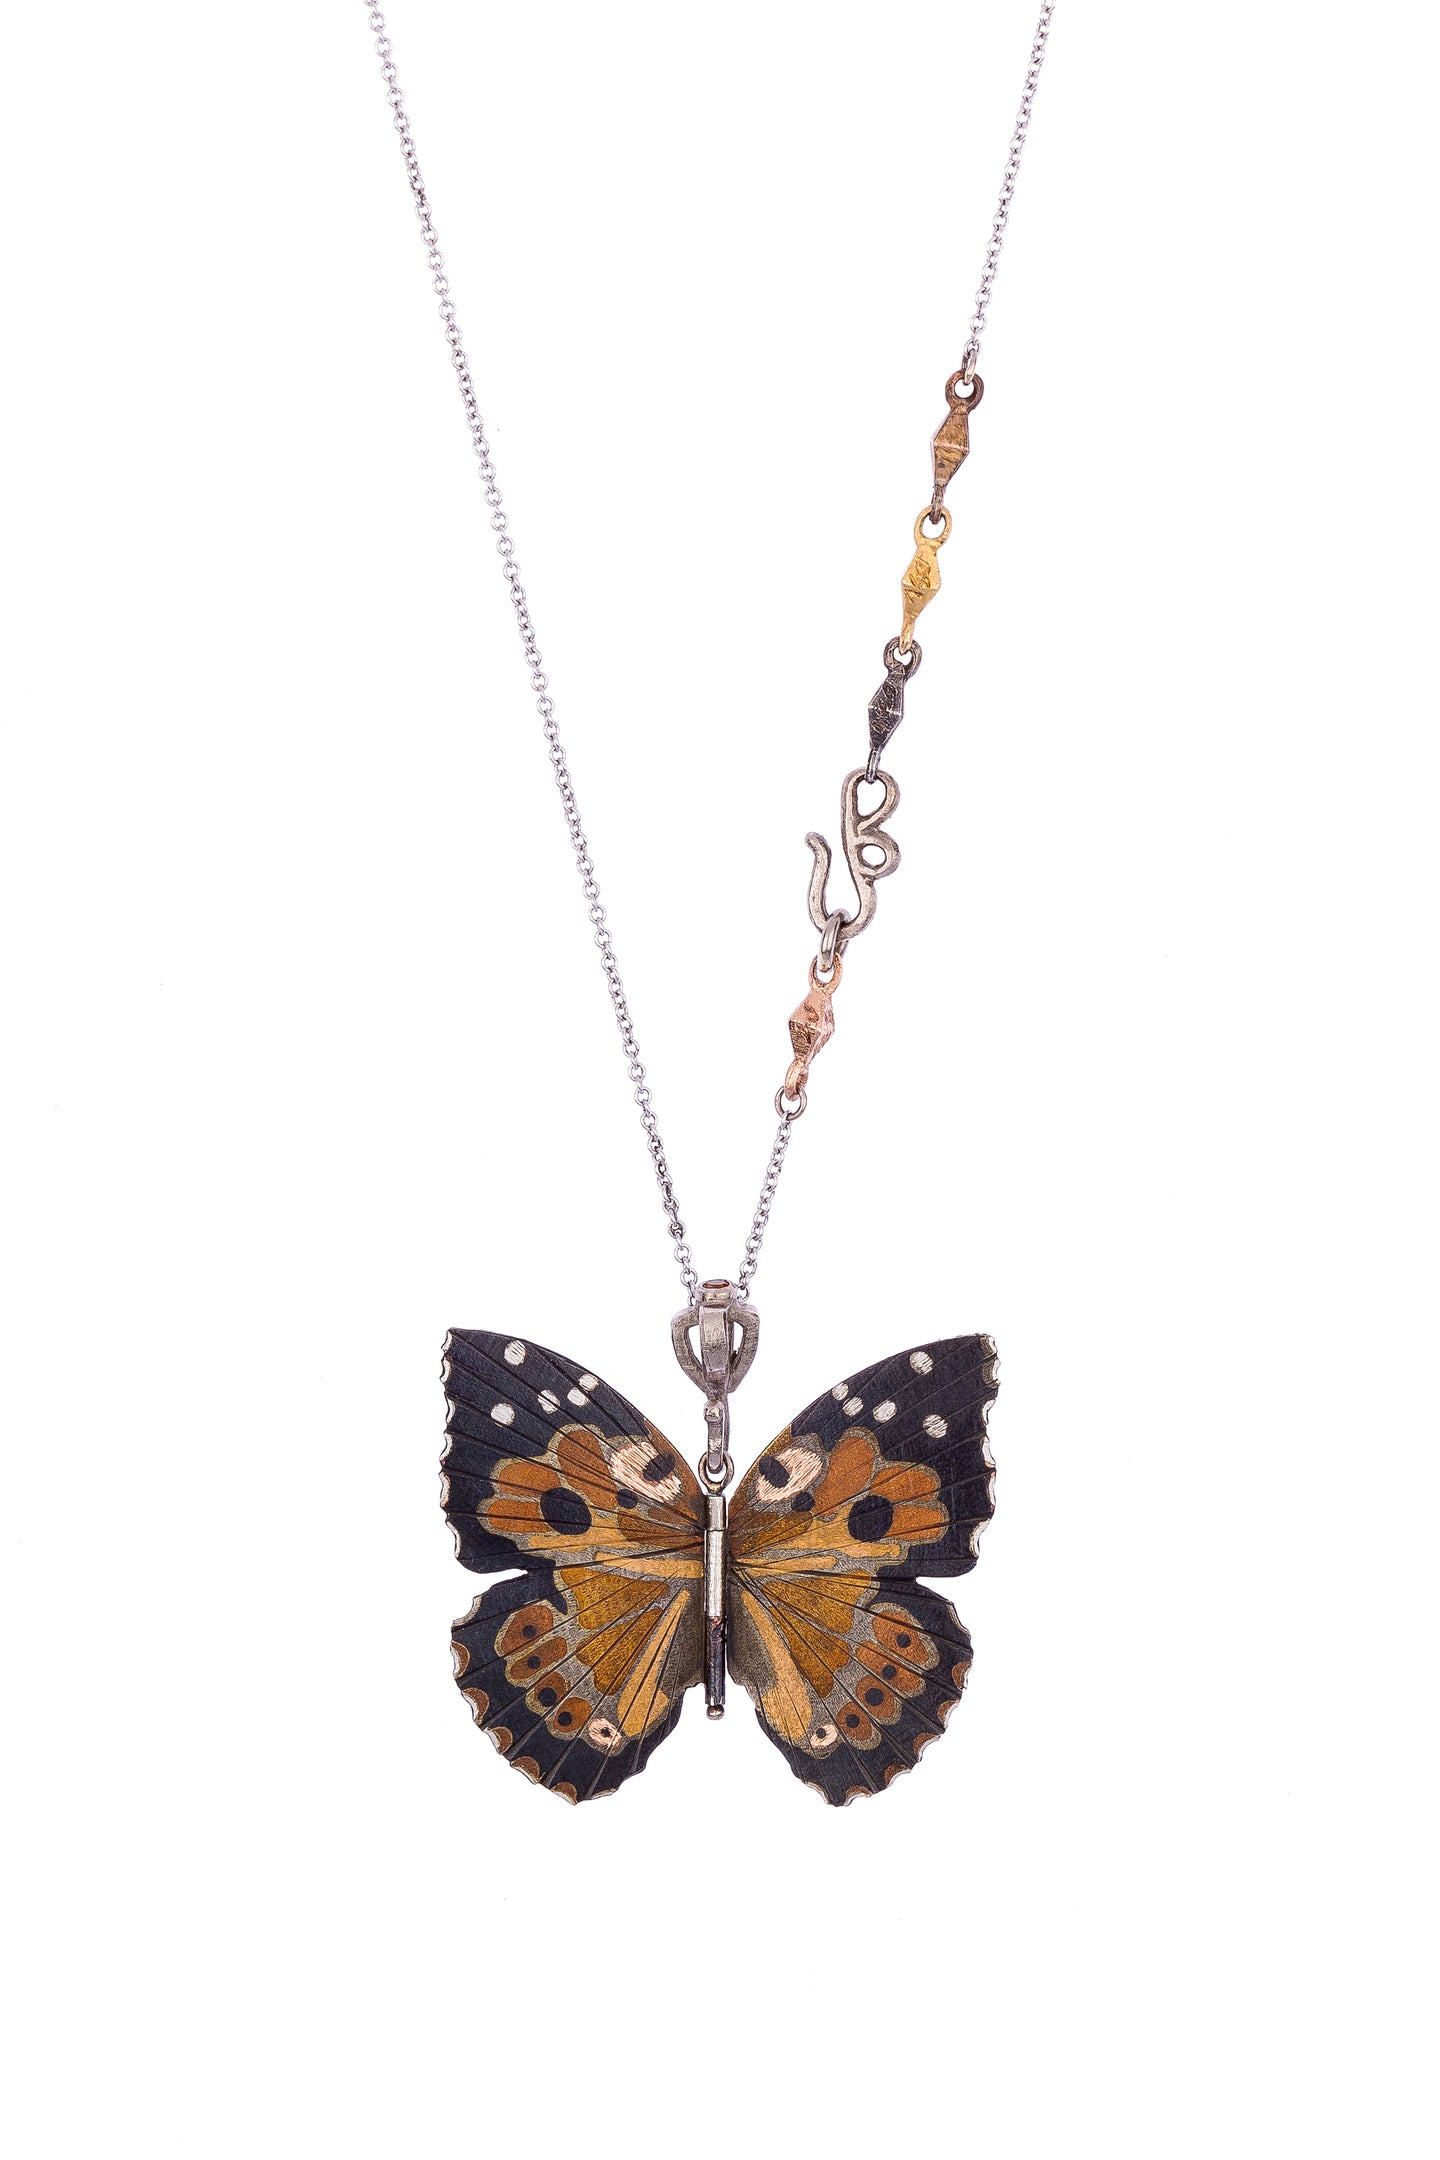 The Kamekameha Butterfly Pendant | Art + Soul Gallery